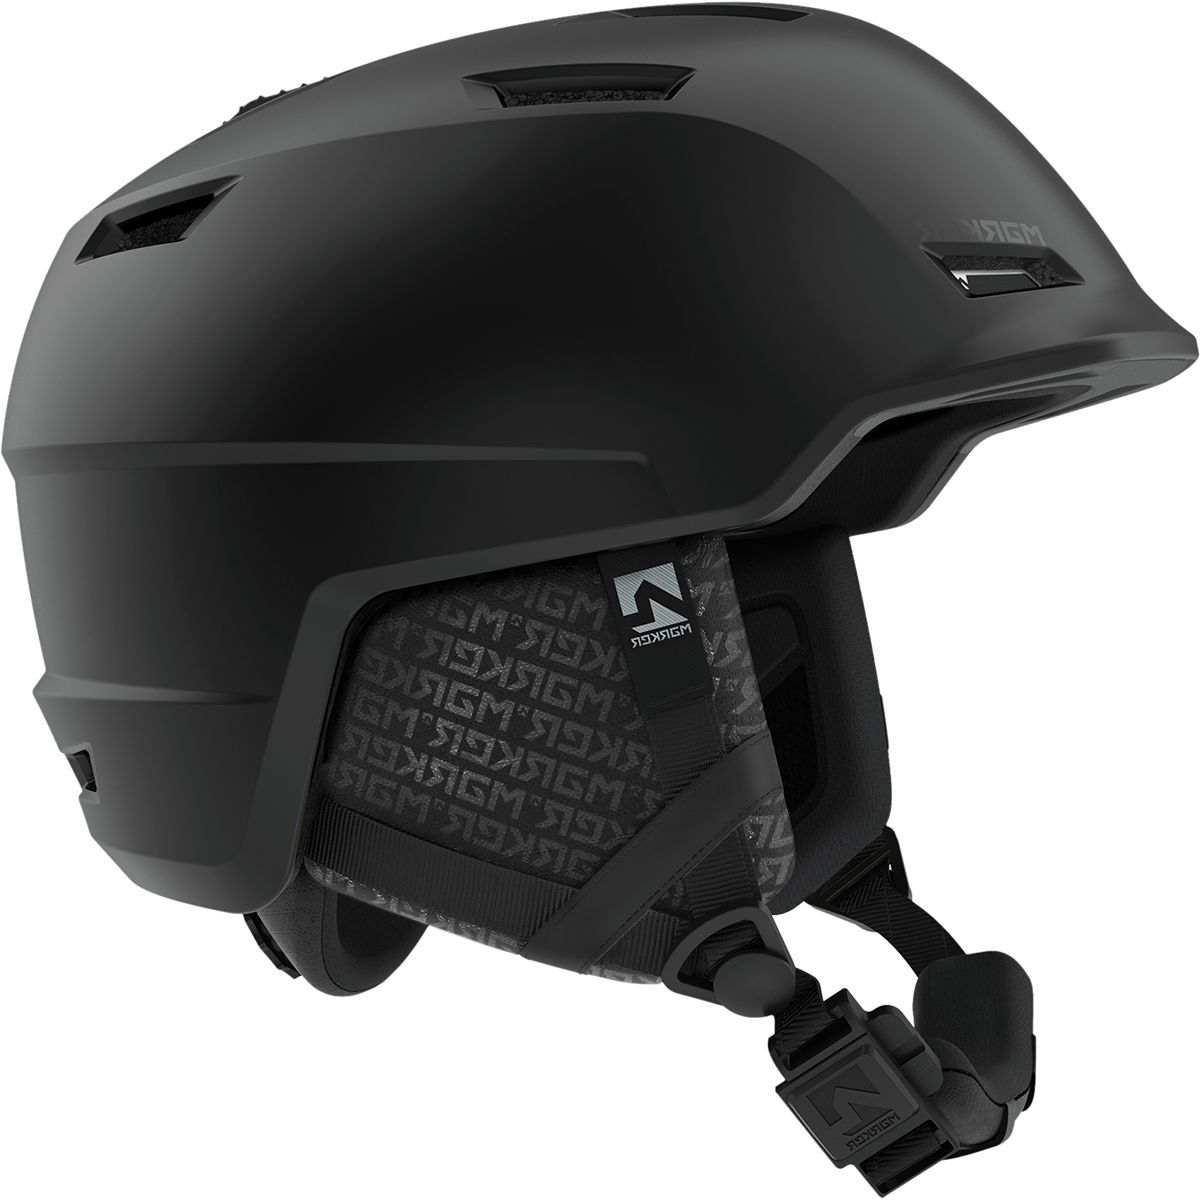 Marker Consort Helmet - Women's